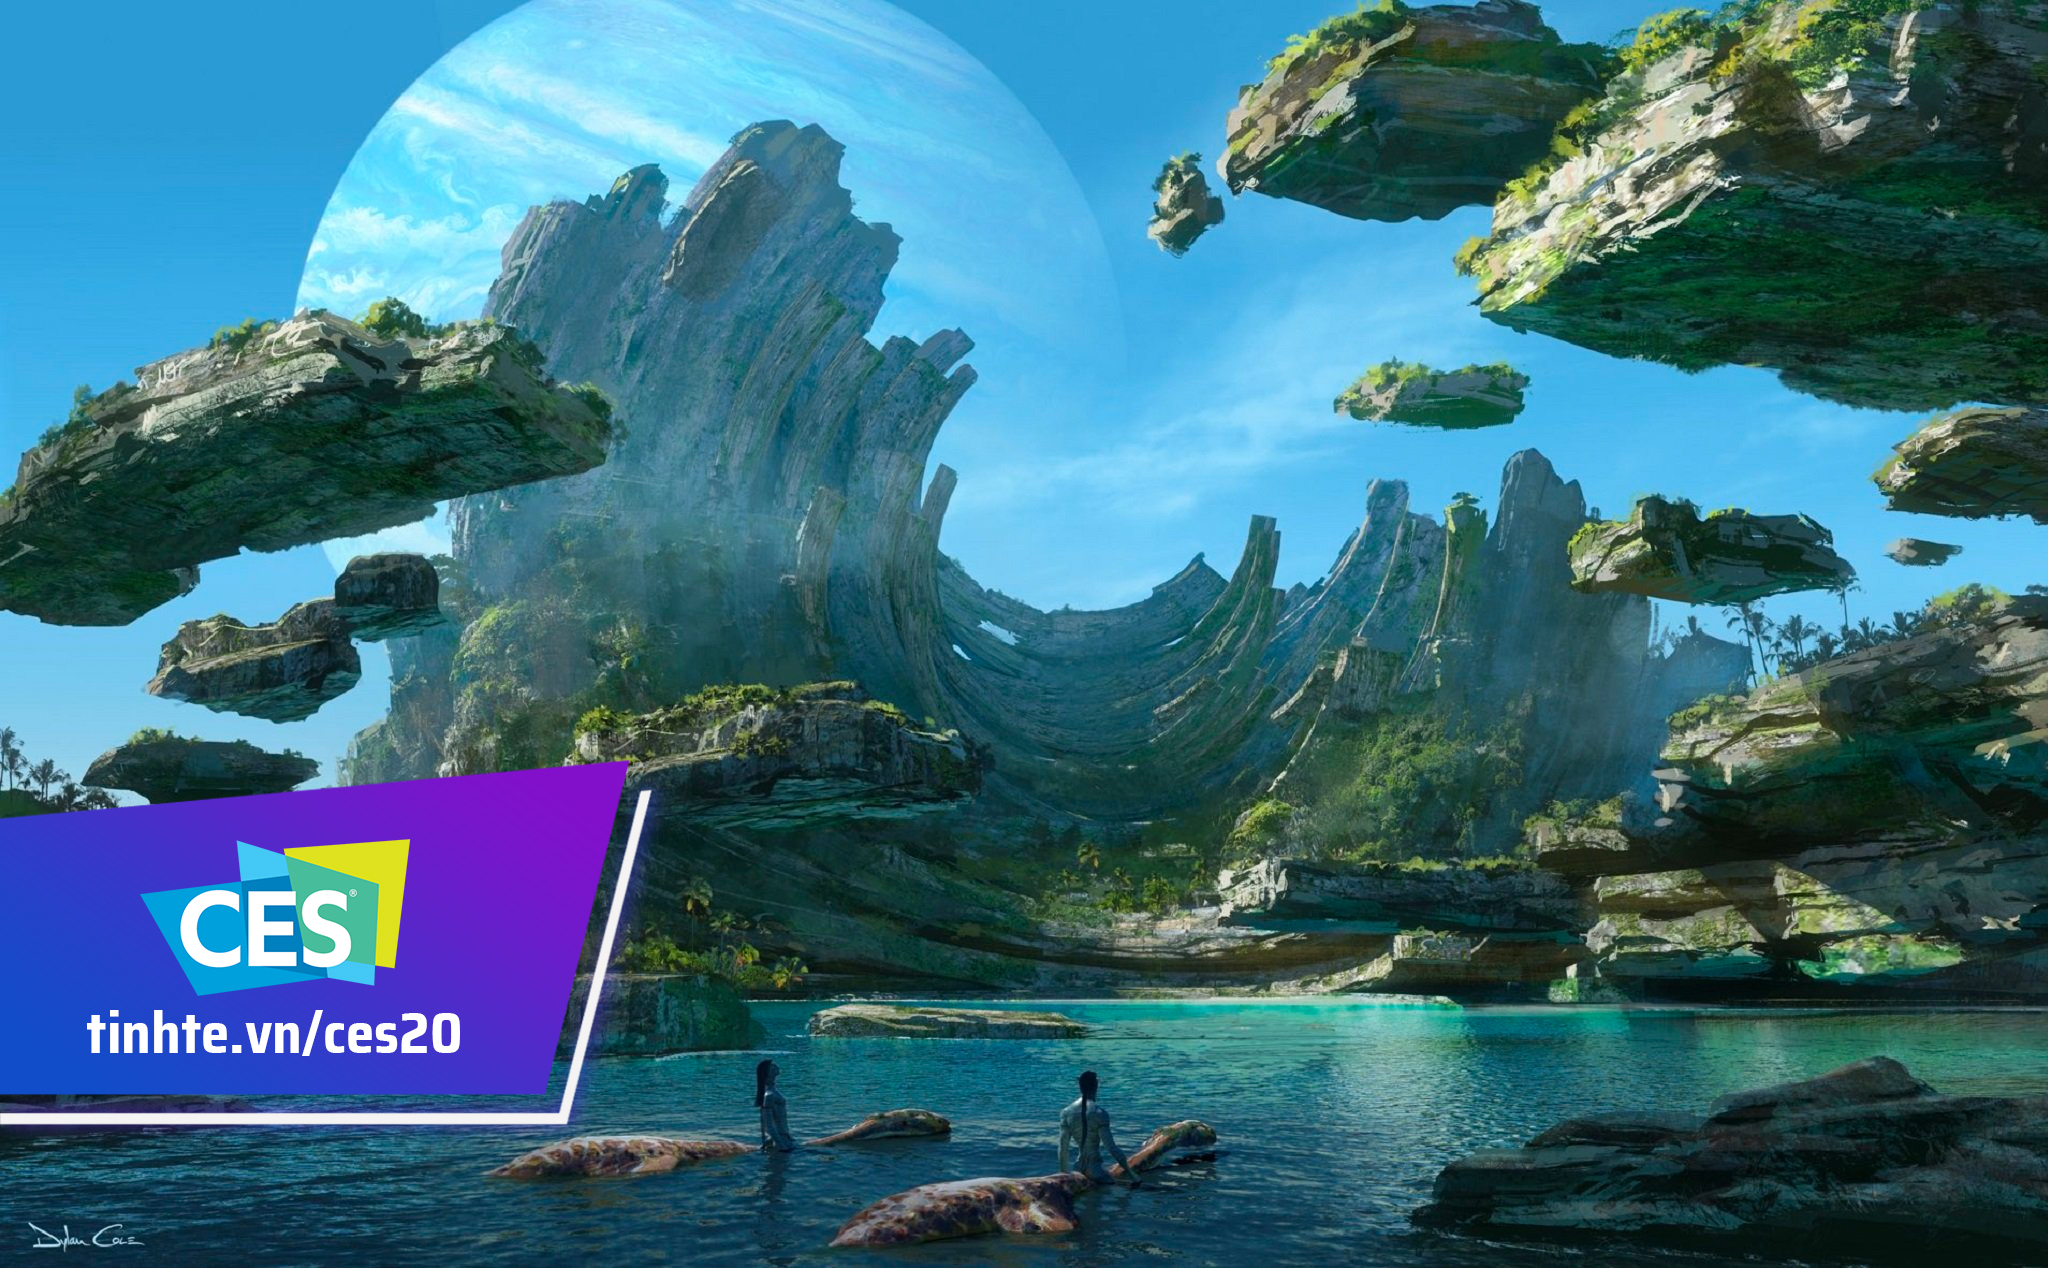 #CES20: Đạo diễn James Cameron hé lộ concept art phim Avatar 2